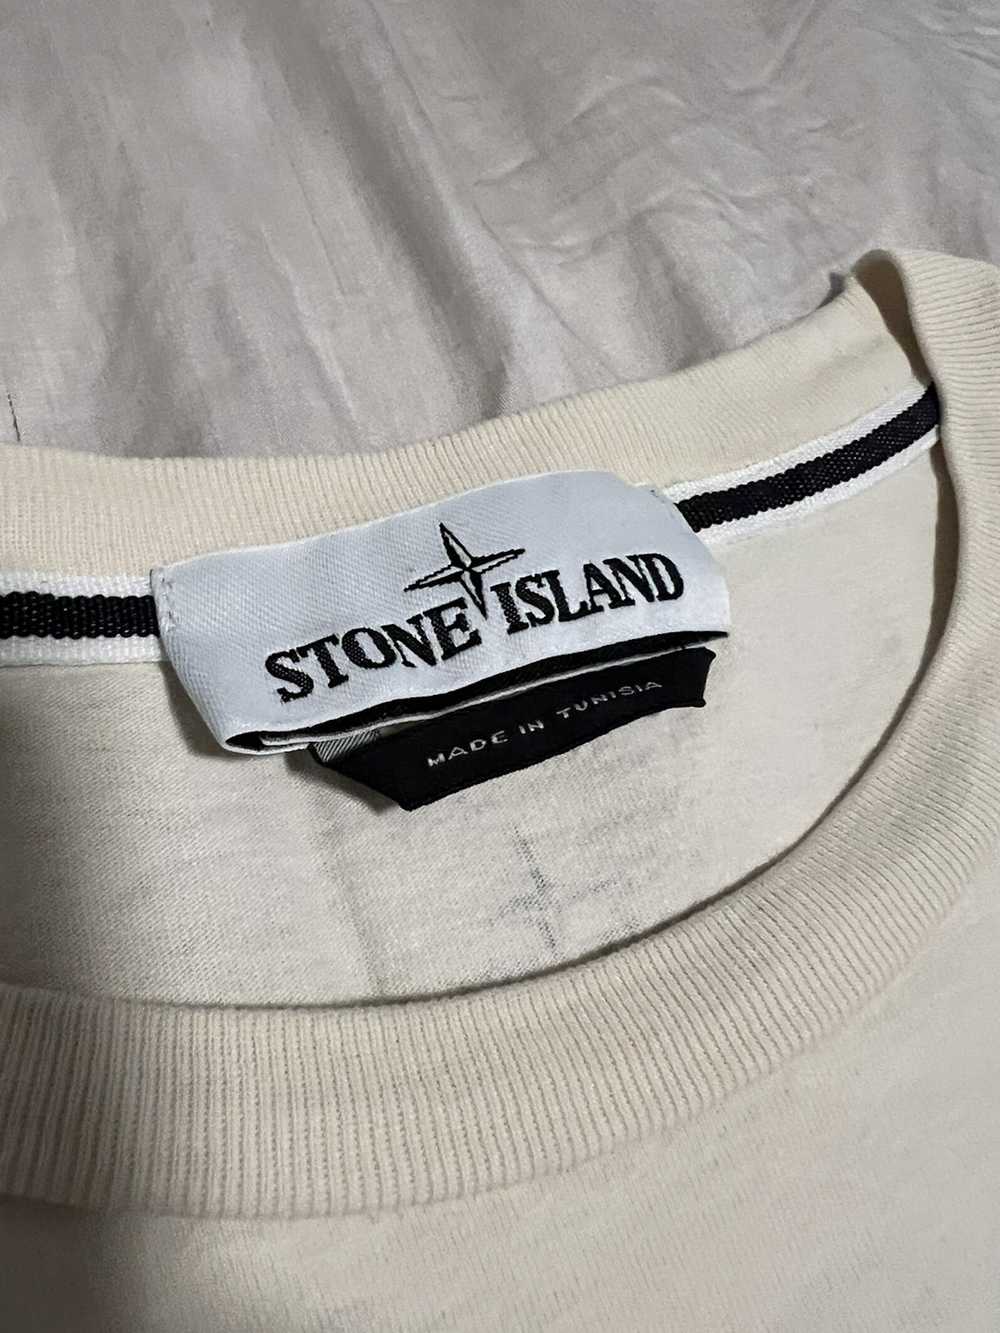 Stone Island Stone Island T-Shirt - image 4